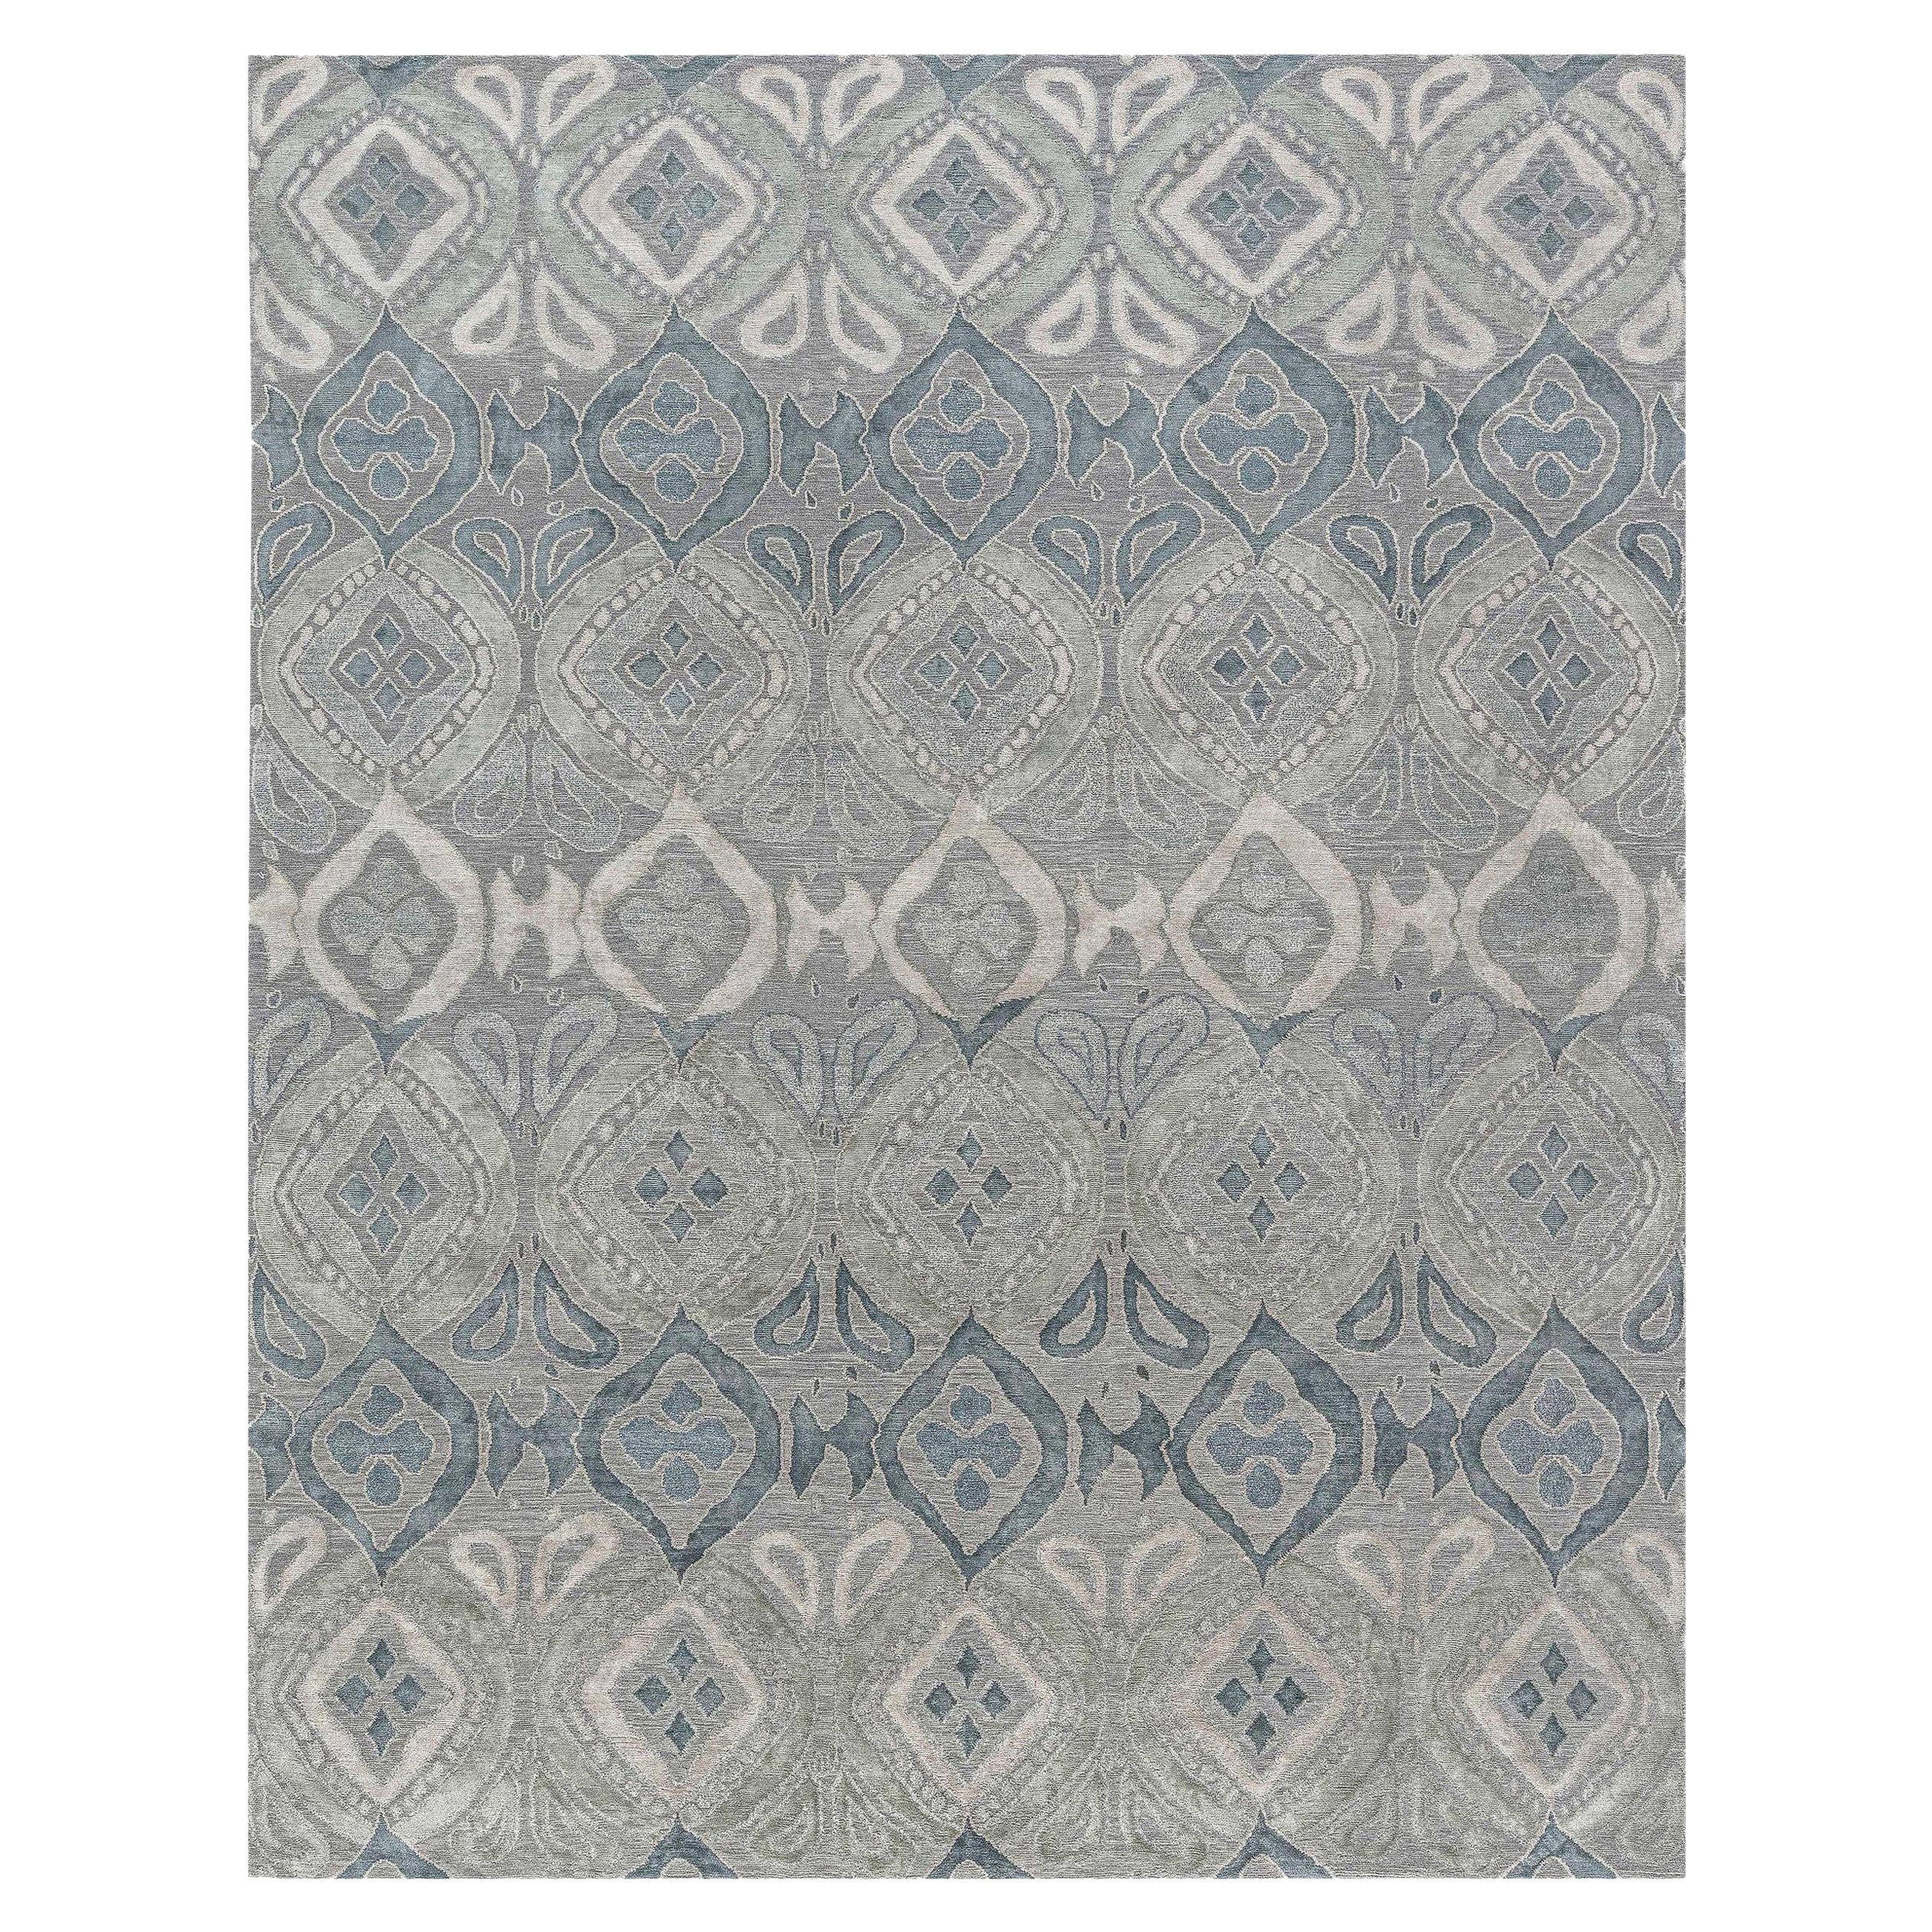 Zeitgenössischer blau-grauer Mandorla-Teppich von Doris Leslie Blau